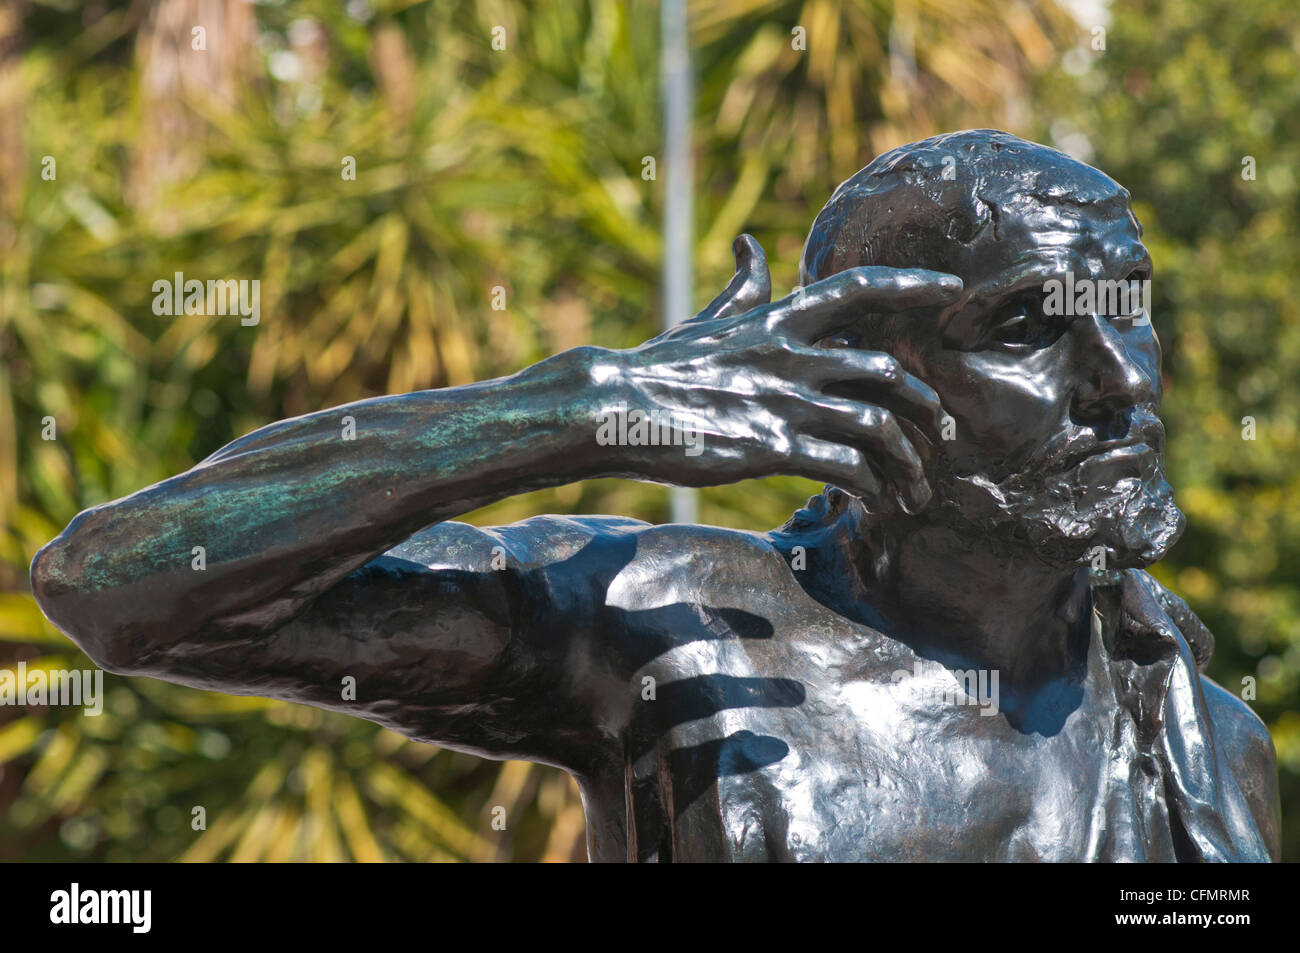 Display di Rodin jaques wissant espressivo gesto di barba burgher calais eroica Foto Stock